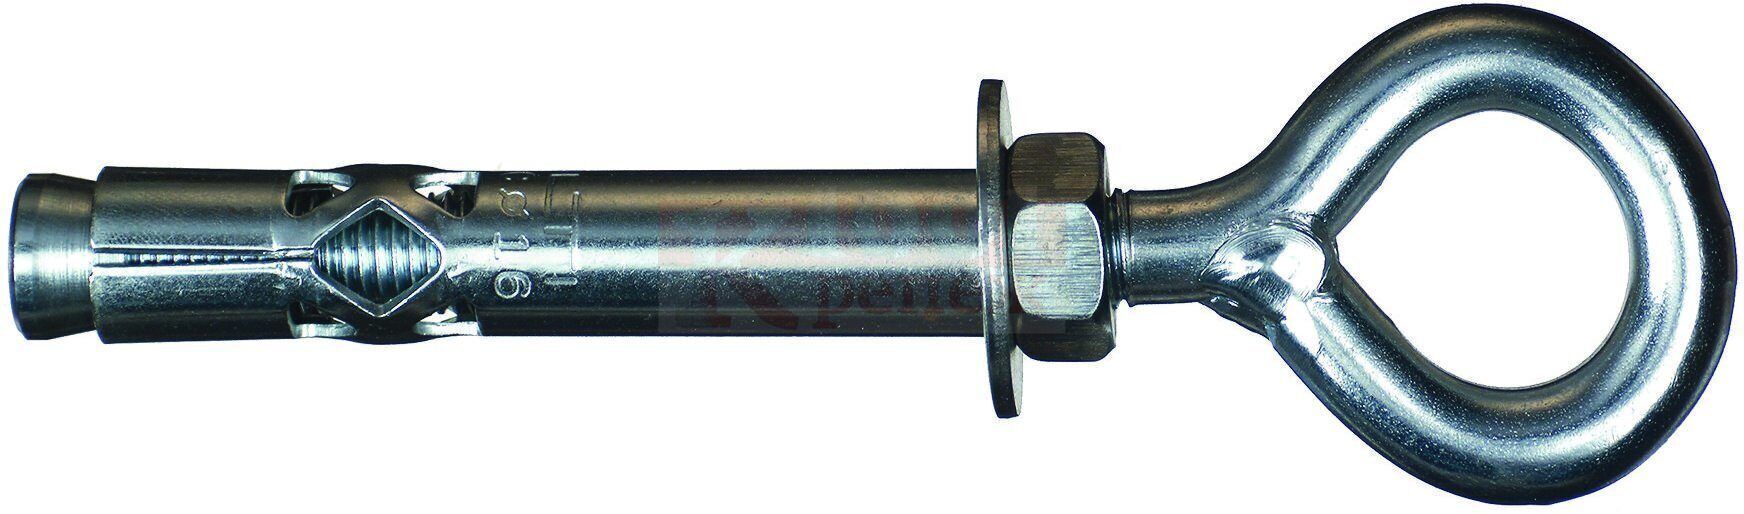 HLC-EC 16x100 Анкер-гильза HILTI с кольцом оцинкованная, M12 16x100/60 мм